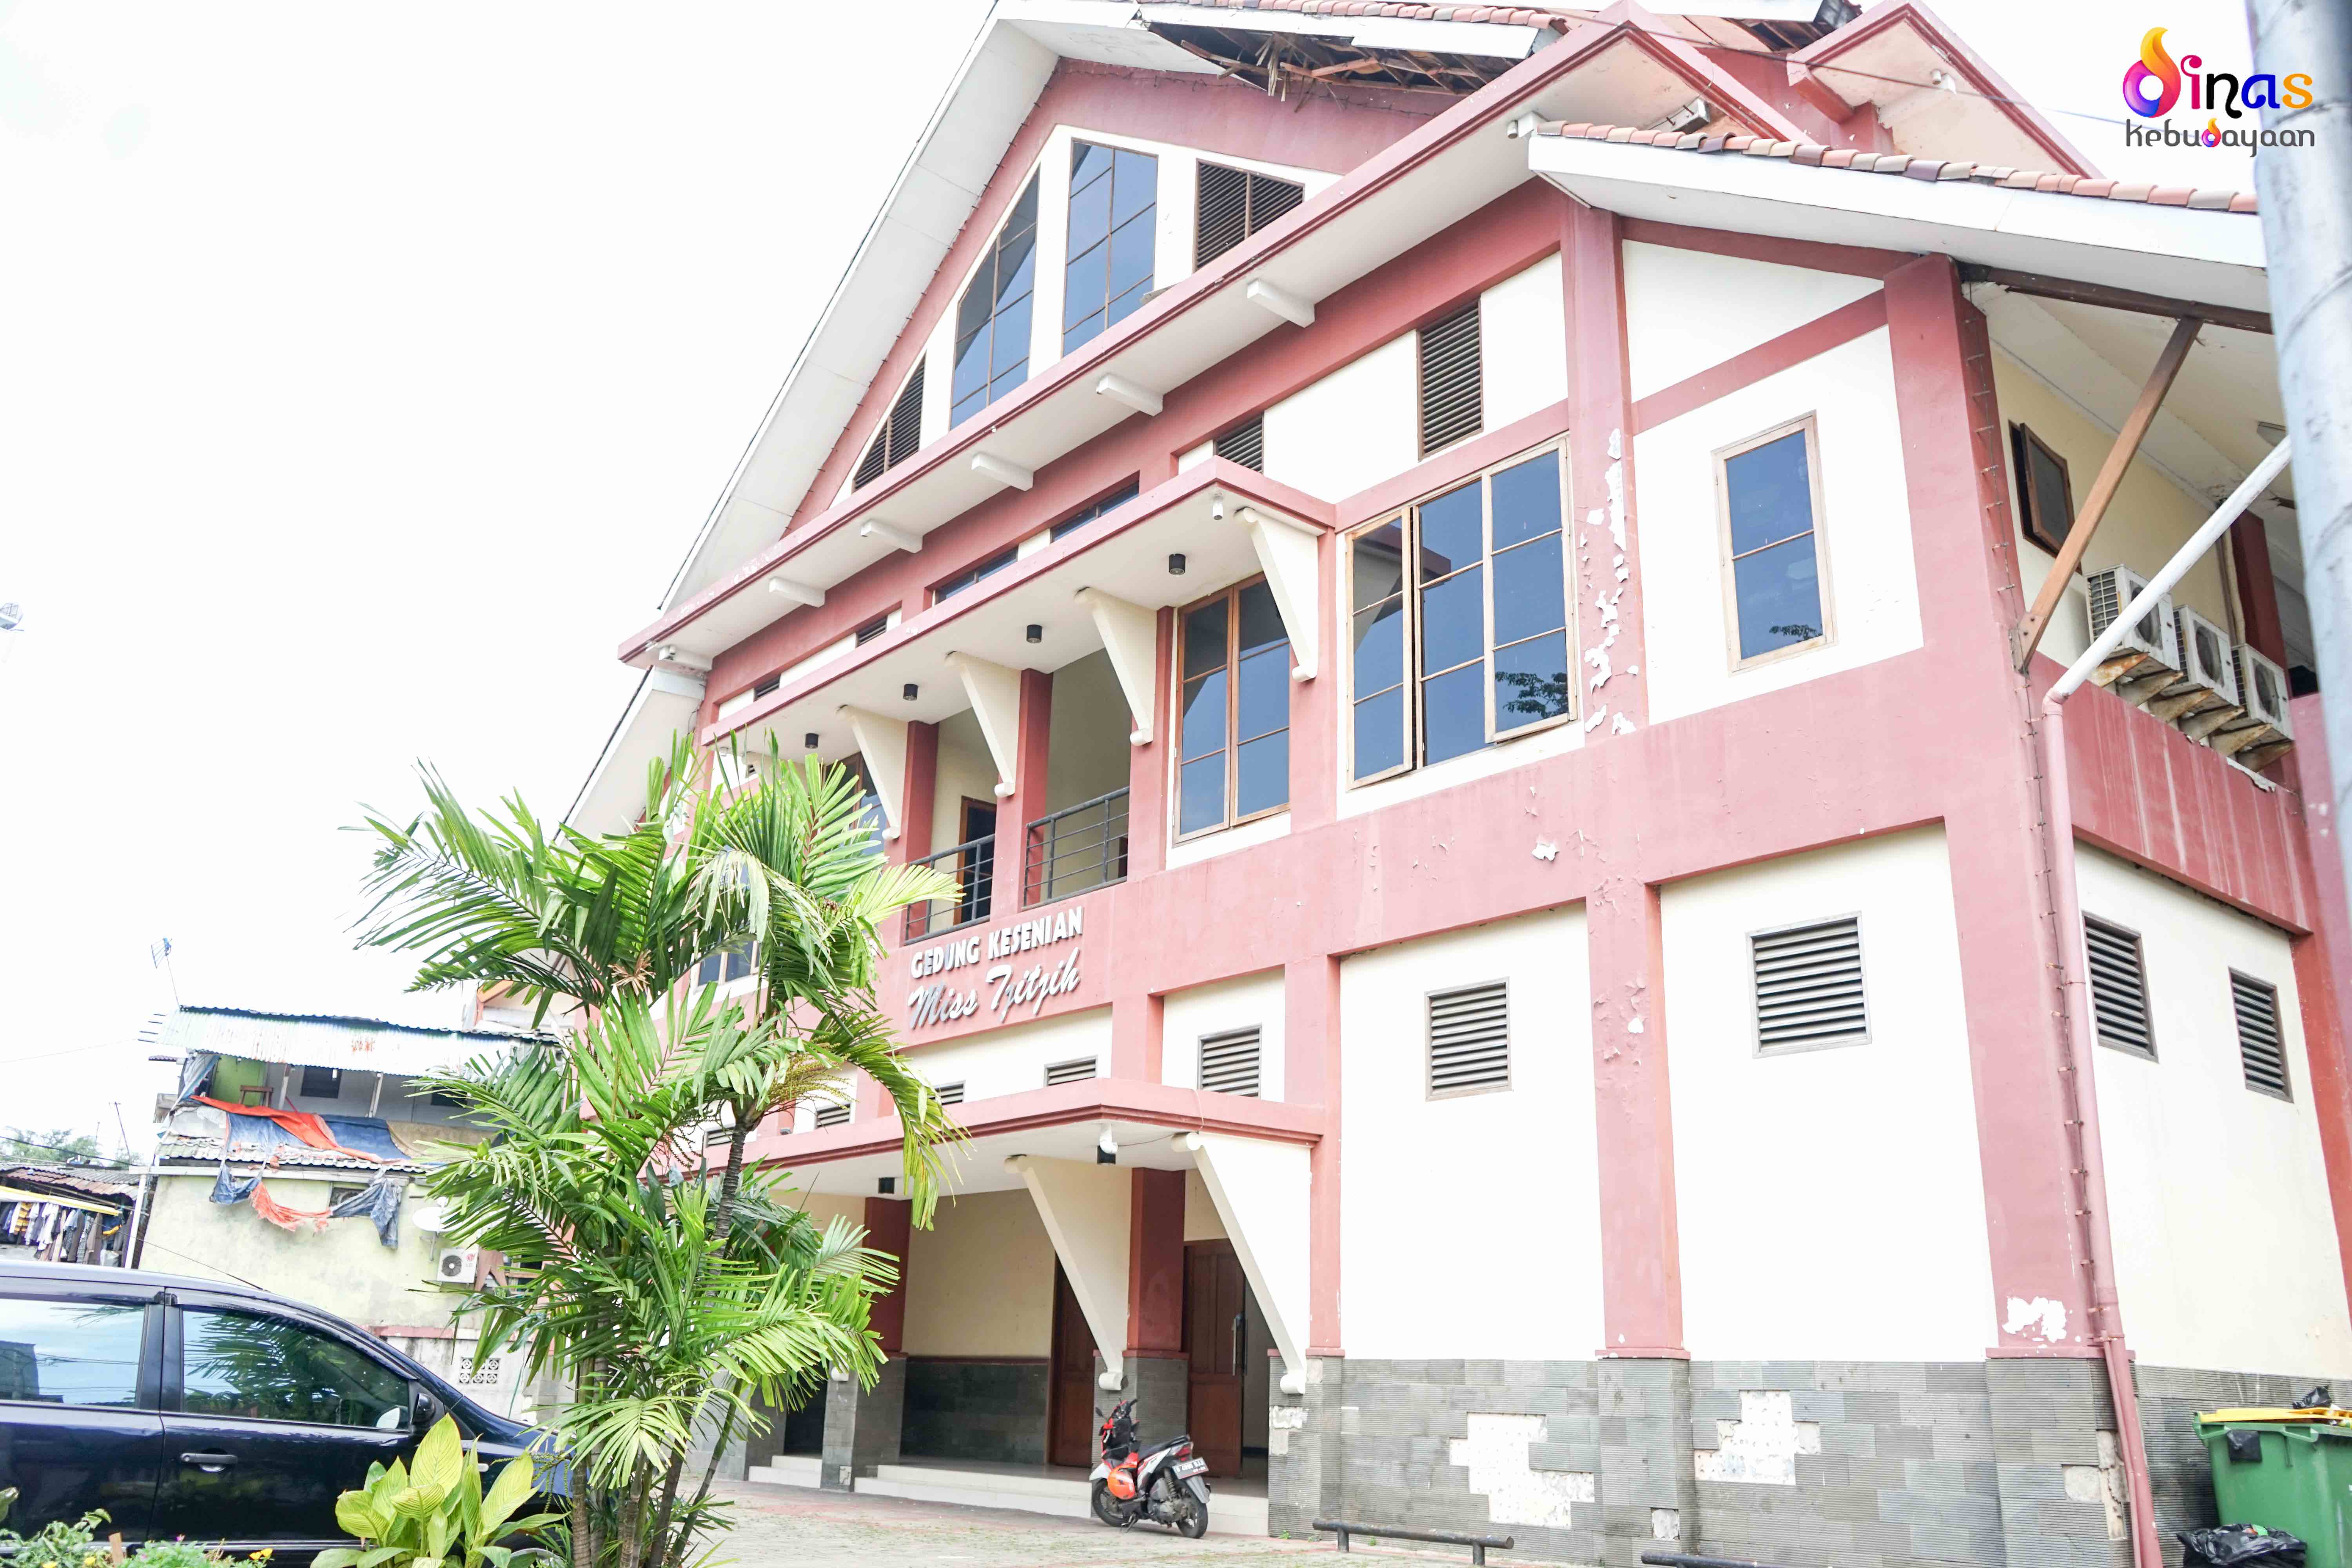 Gedung Miss TjiTjih (Sumber foto: Dinas Kebudayaan Jakarta)